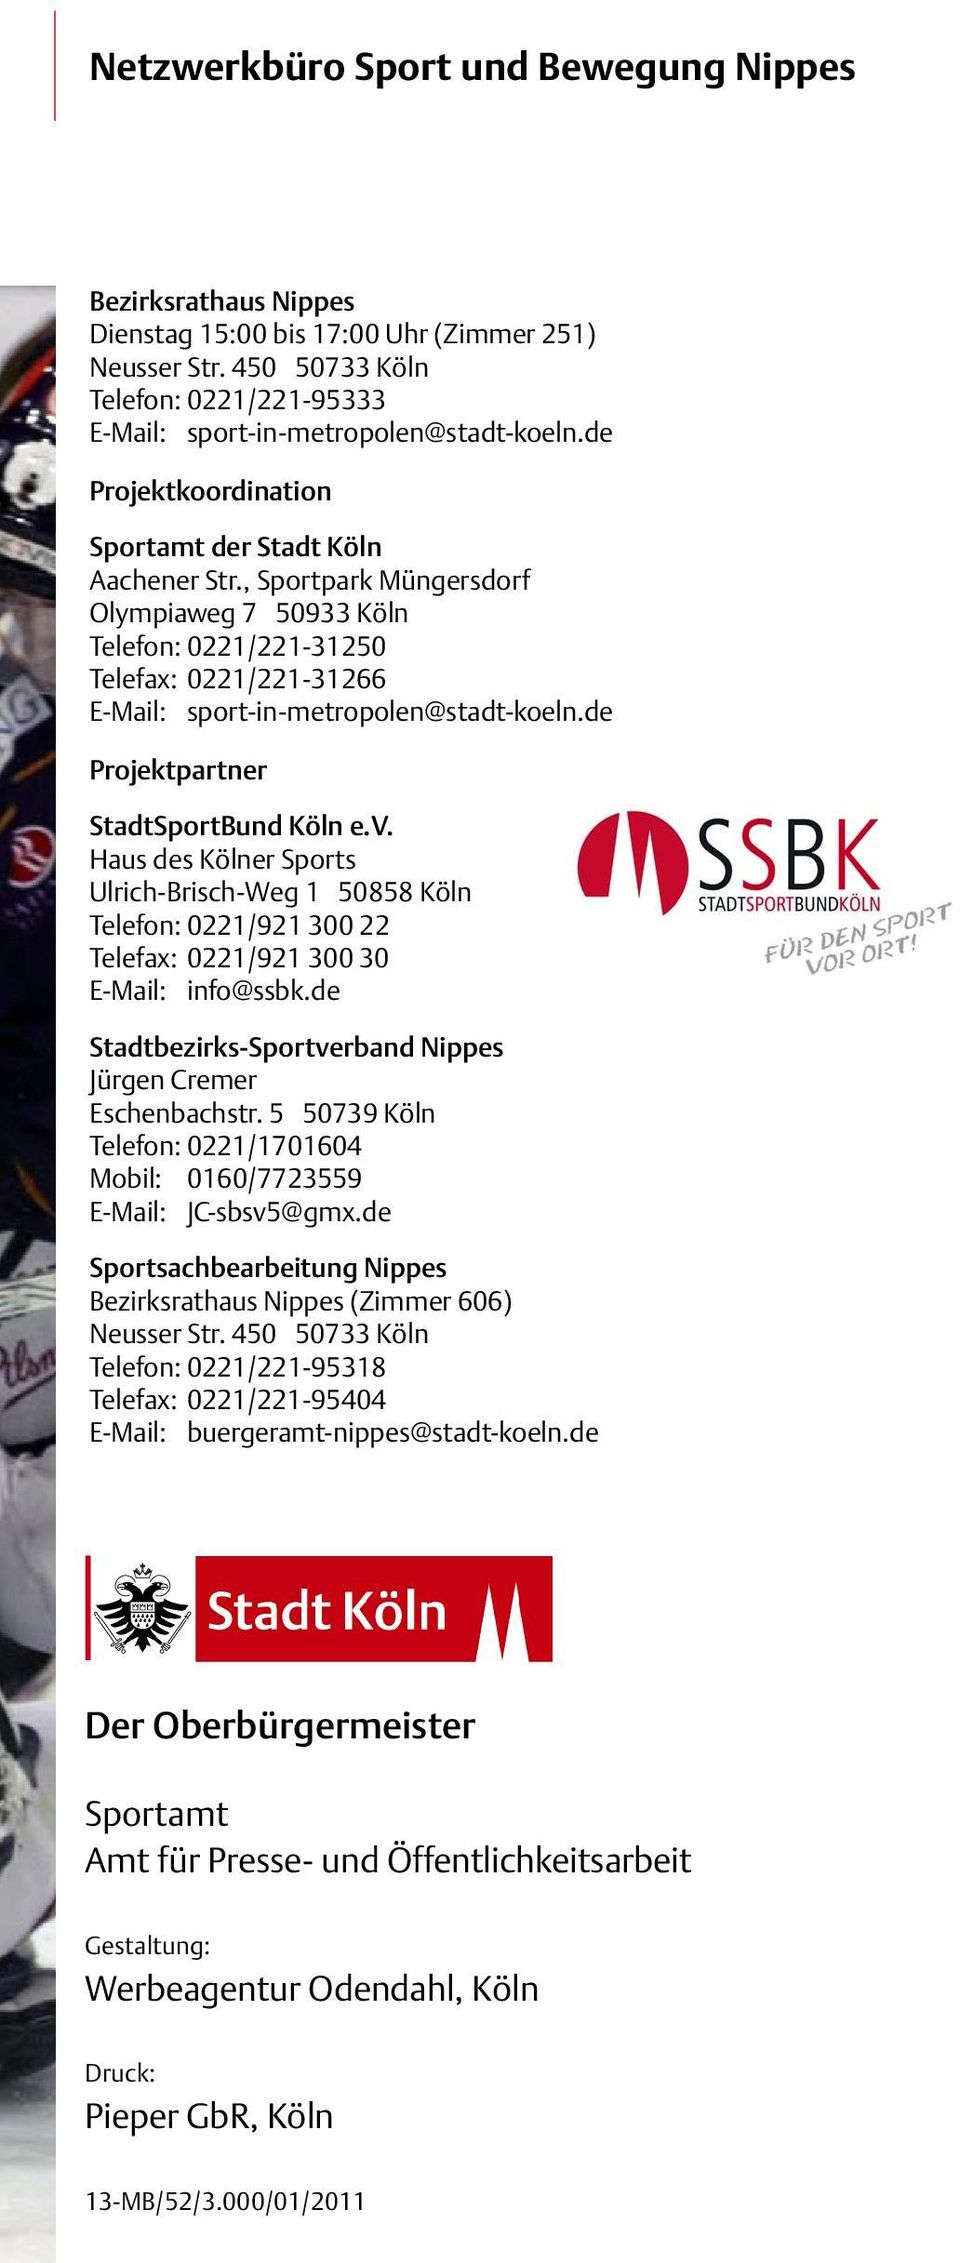 de Projektpartner StadtSportBund Köln e.v. Haus des Kölner Sports Ulrich-Brisch-Weg 1 50858 Köln Telefon: 0221/921 300 22 Telefax: 0221/921 300 30 E-Mail: info@ssbk.